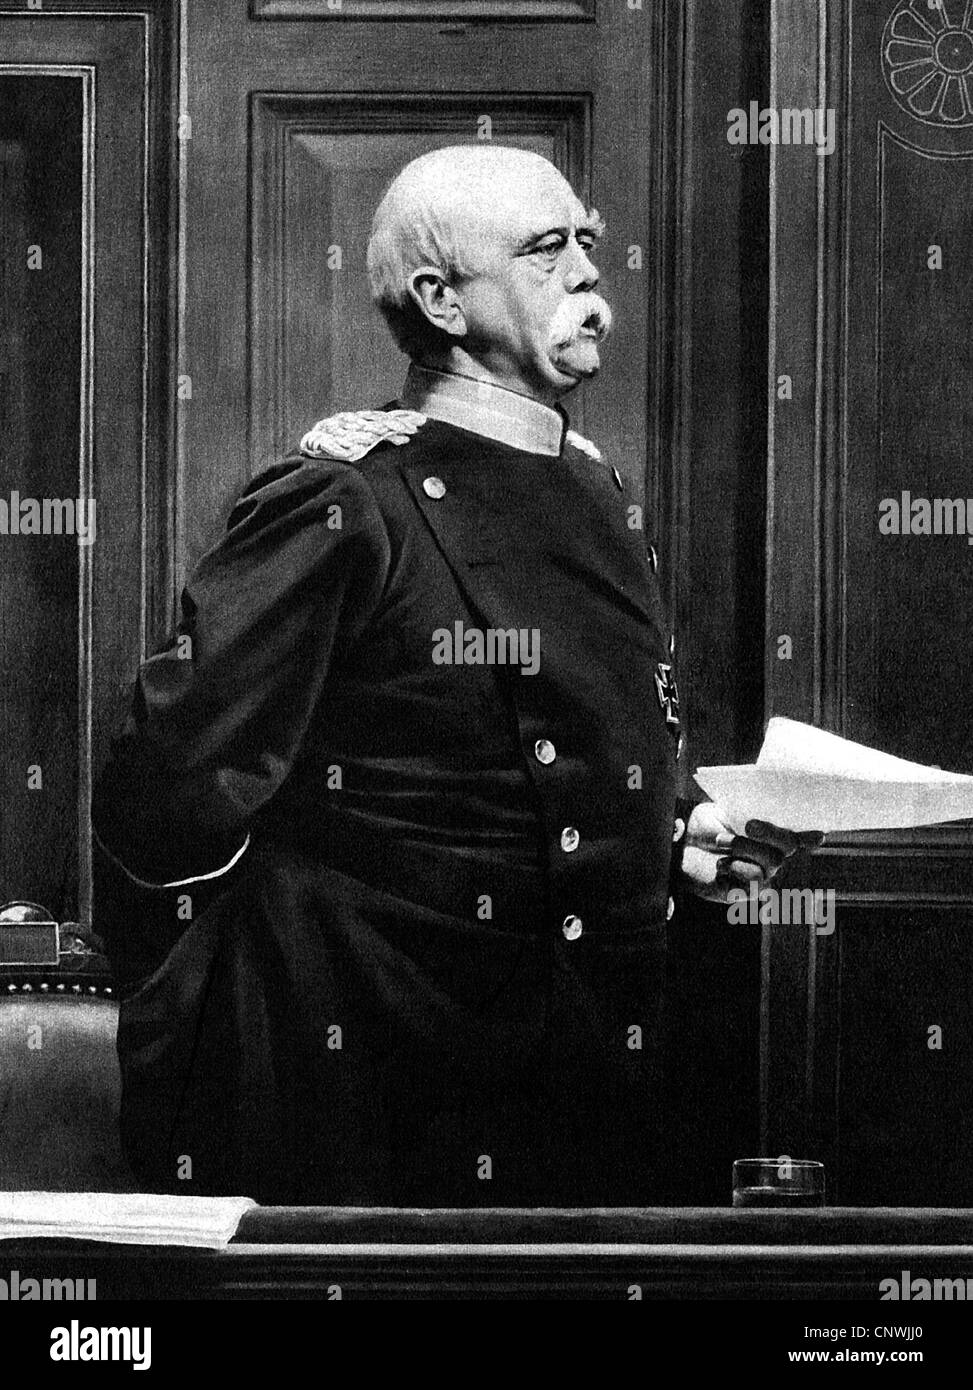 Bismarck, otto von, 1.4.1815 - 30.7.1898, politico tedesco, cancelliere del Reich 1871 - 1890, che parla, dipinto di Anton von Werner, Foto Stock